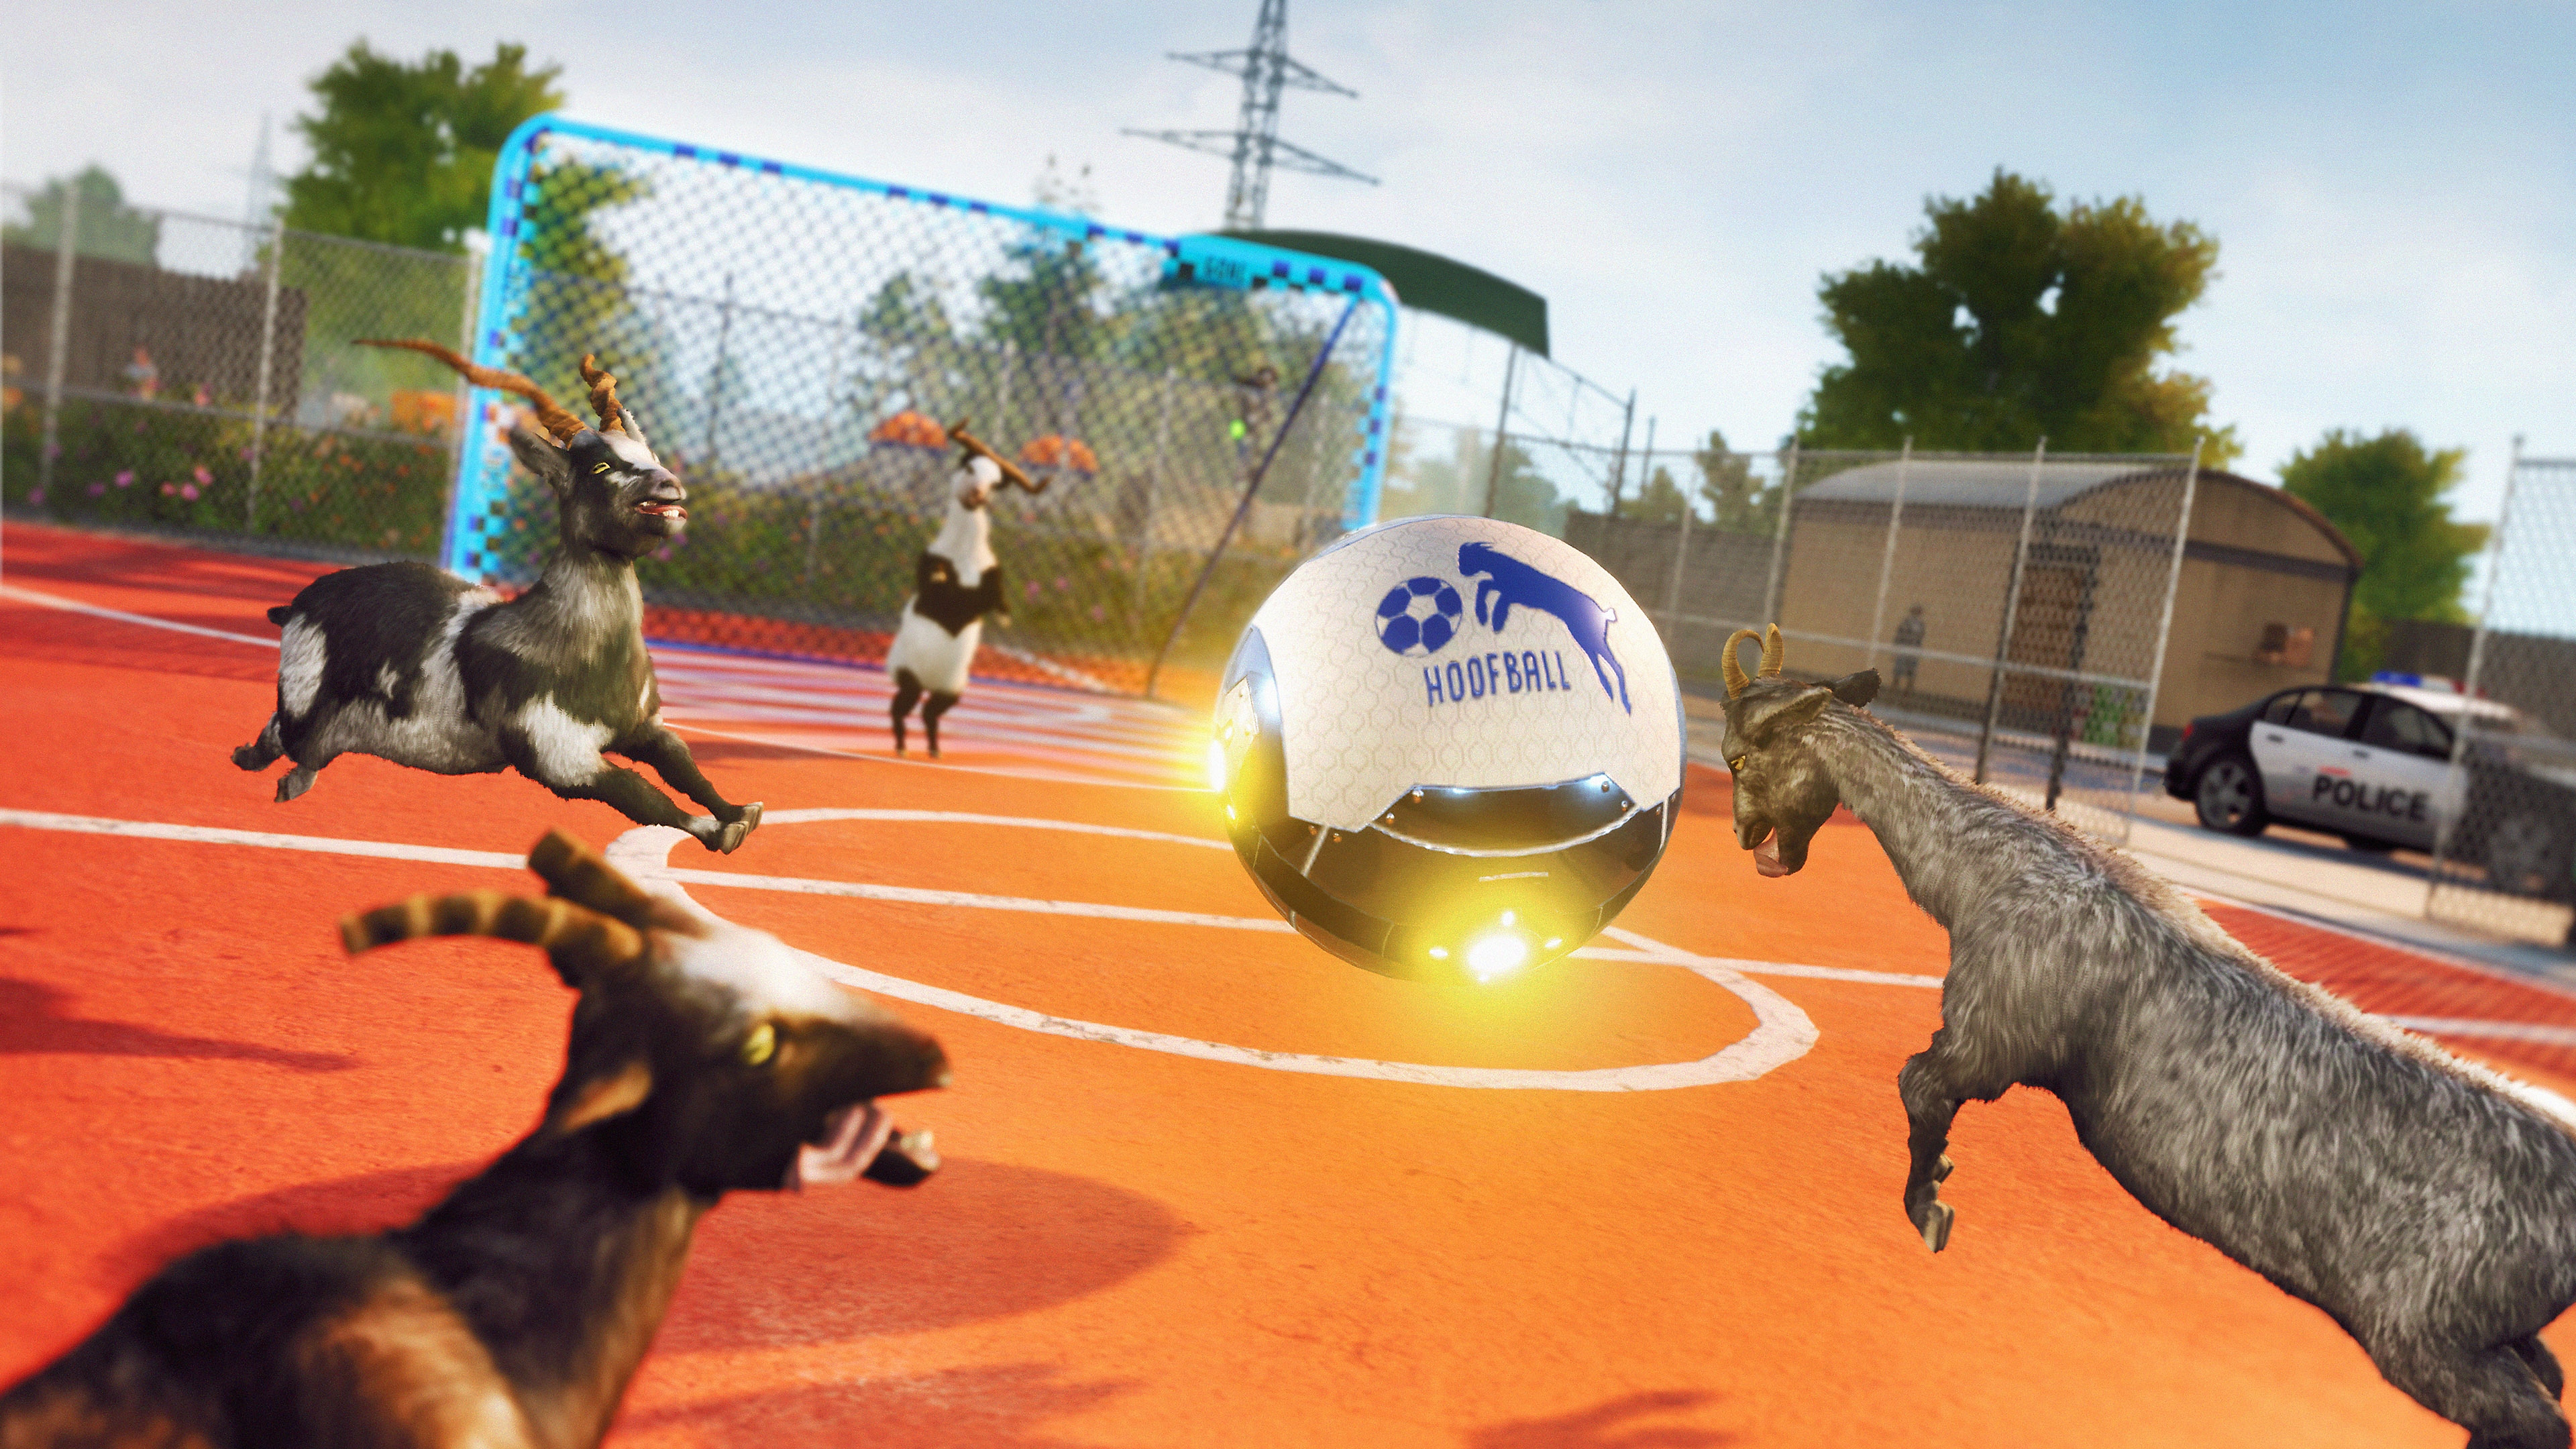 Goat Simulator 3 -kuvakaappaus, jossa vuohet pelaavat jalkapalloa jättikokoisella pallolla